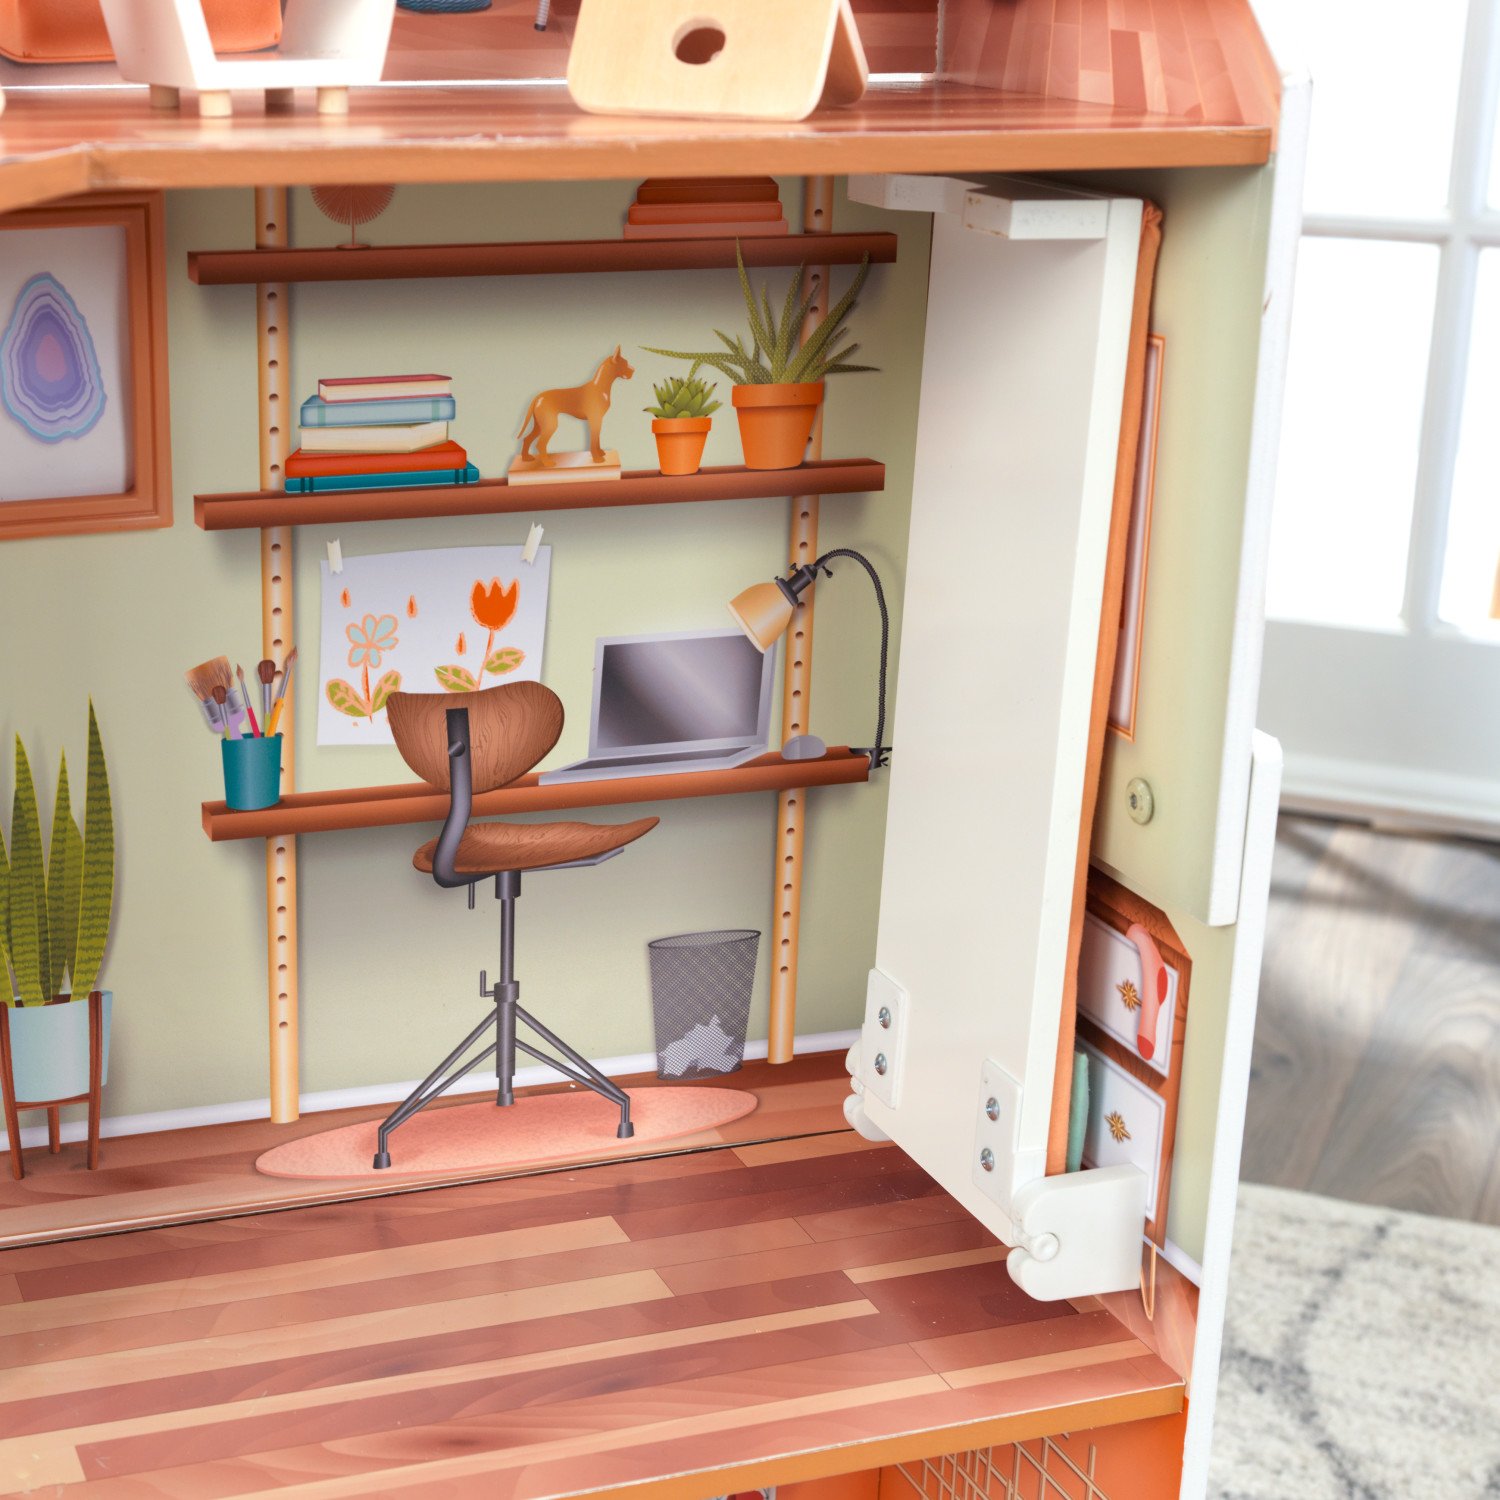 Кукольный домик с мебелью – Марлоу, 14 элементов  